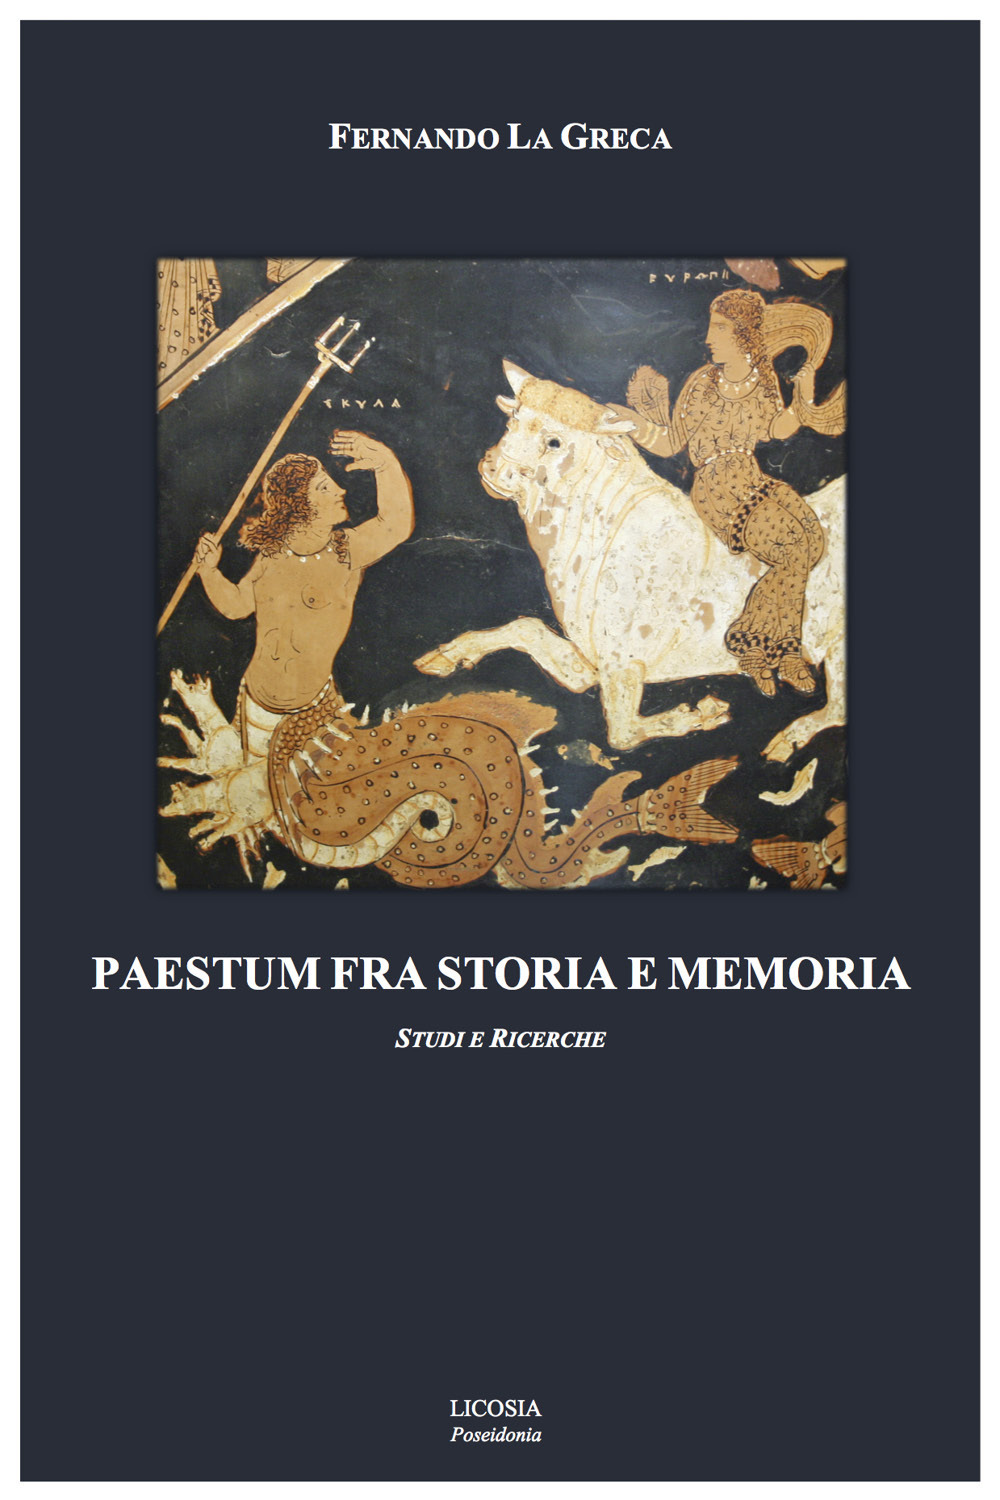 Libri La Greca Fernando - Paestum Fra Storia E Memoria. Studi E Ricerche NUOVO SIGILLATO, EDIZIONE DEL 17/10/2017 SUBITO DISPONIBILE